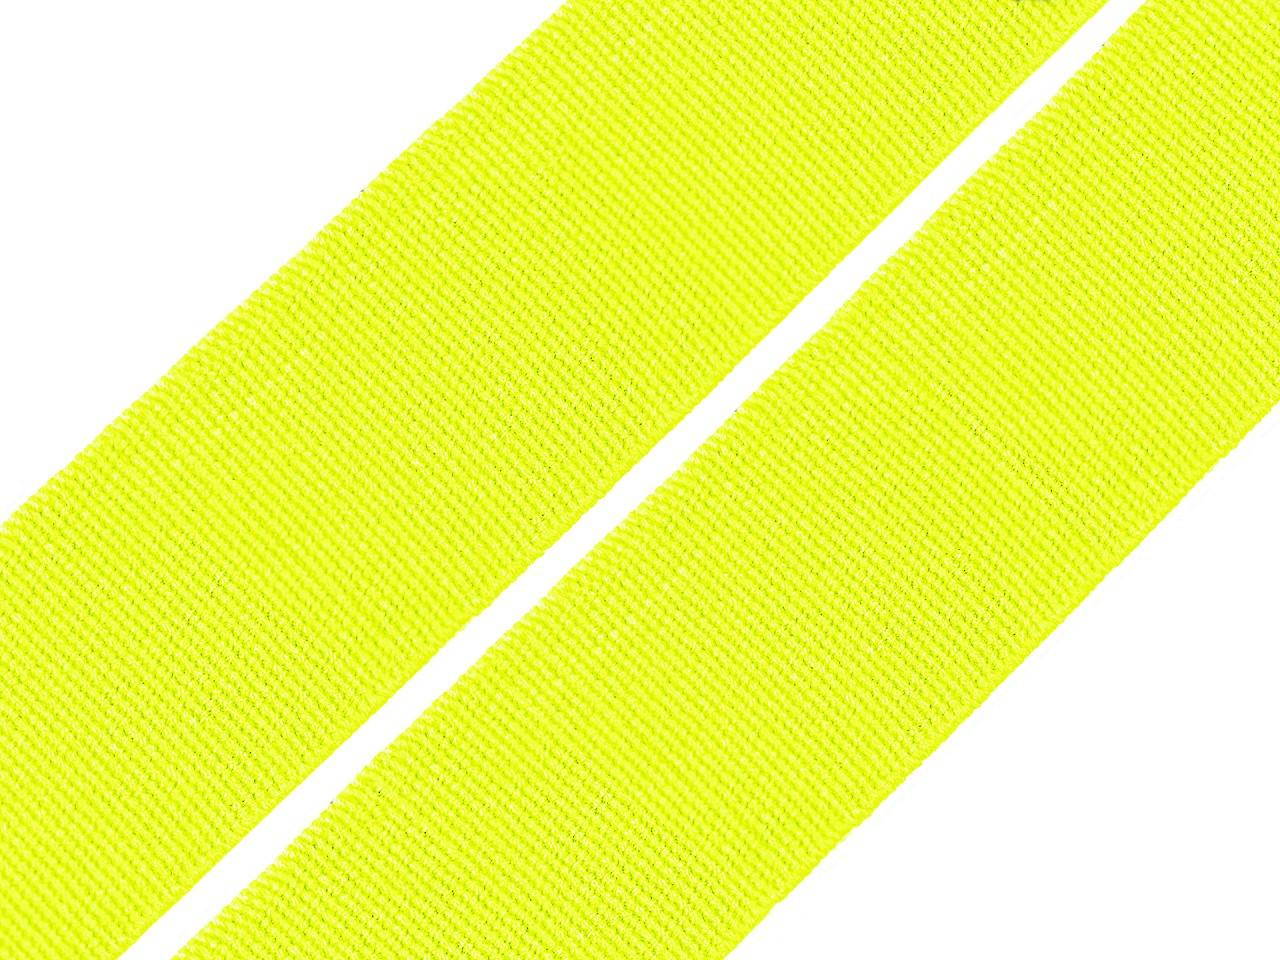 Pruženka hladká šíře 20 mm tkaná barevná, barva 4206 žlutozelená ost. neon